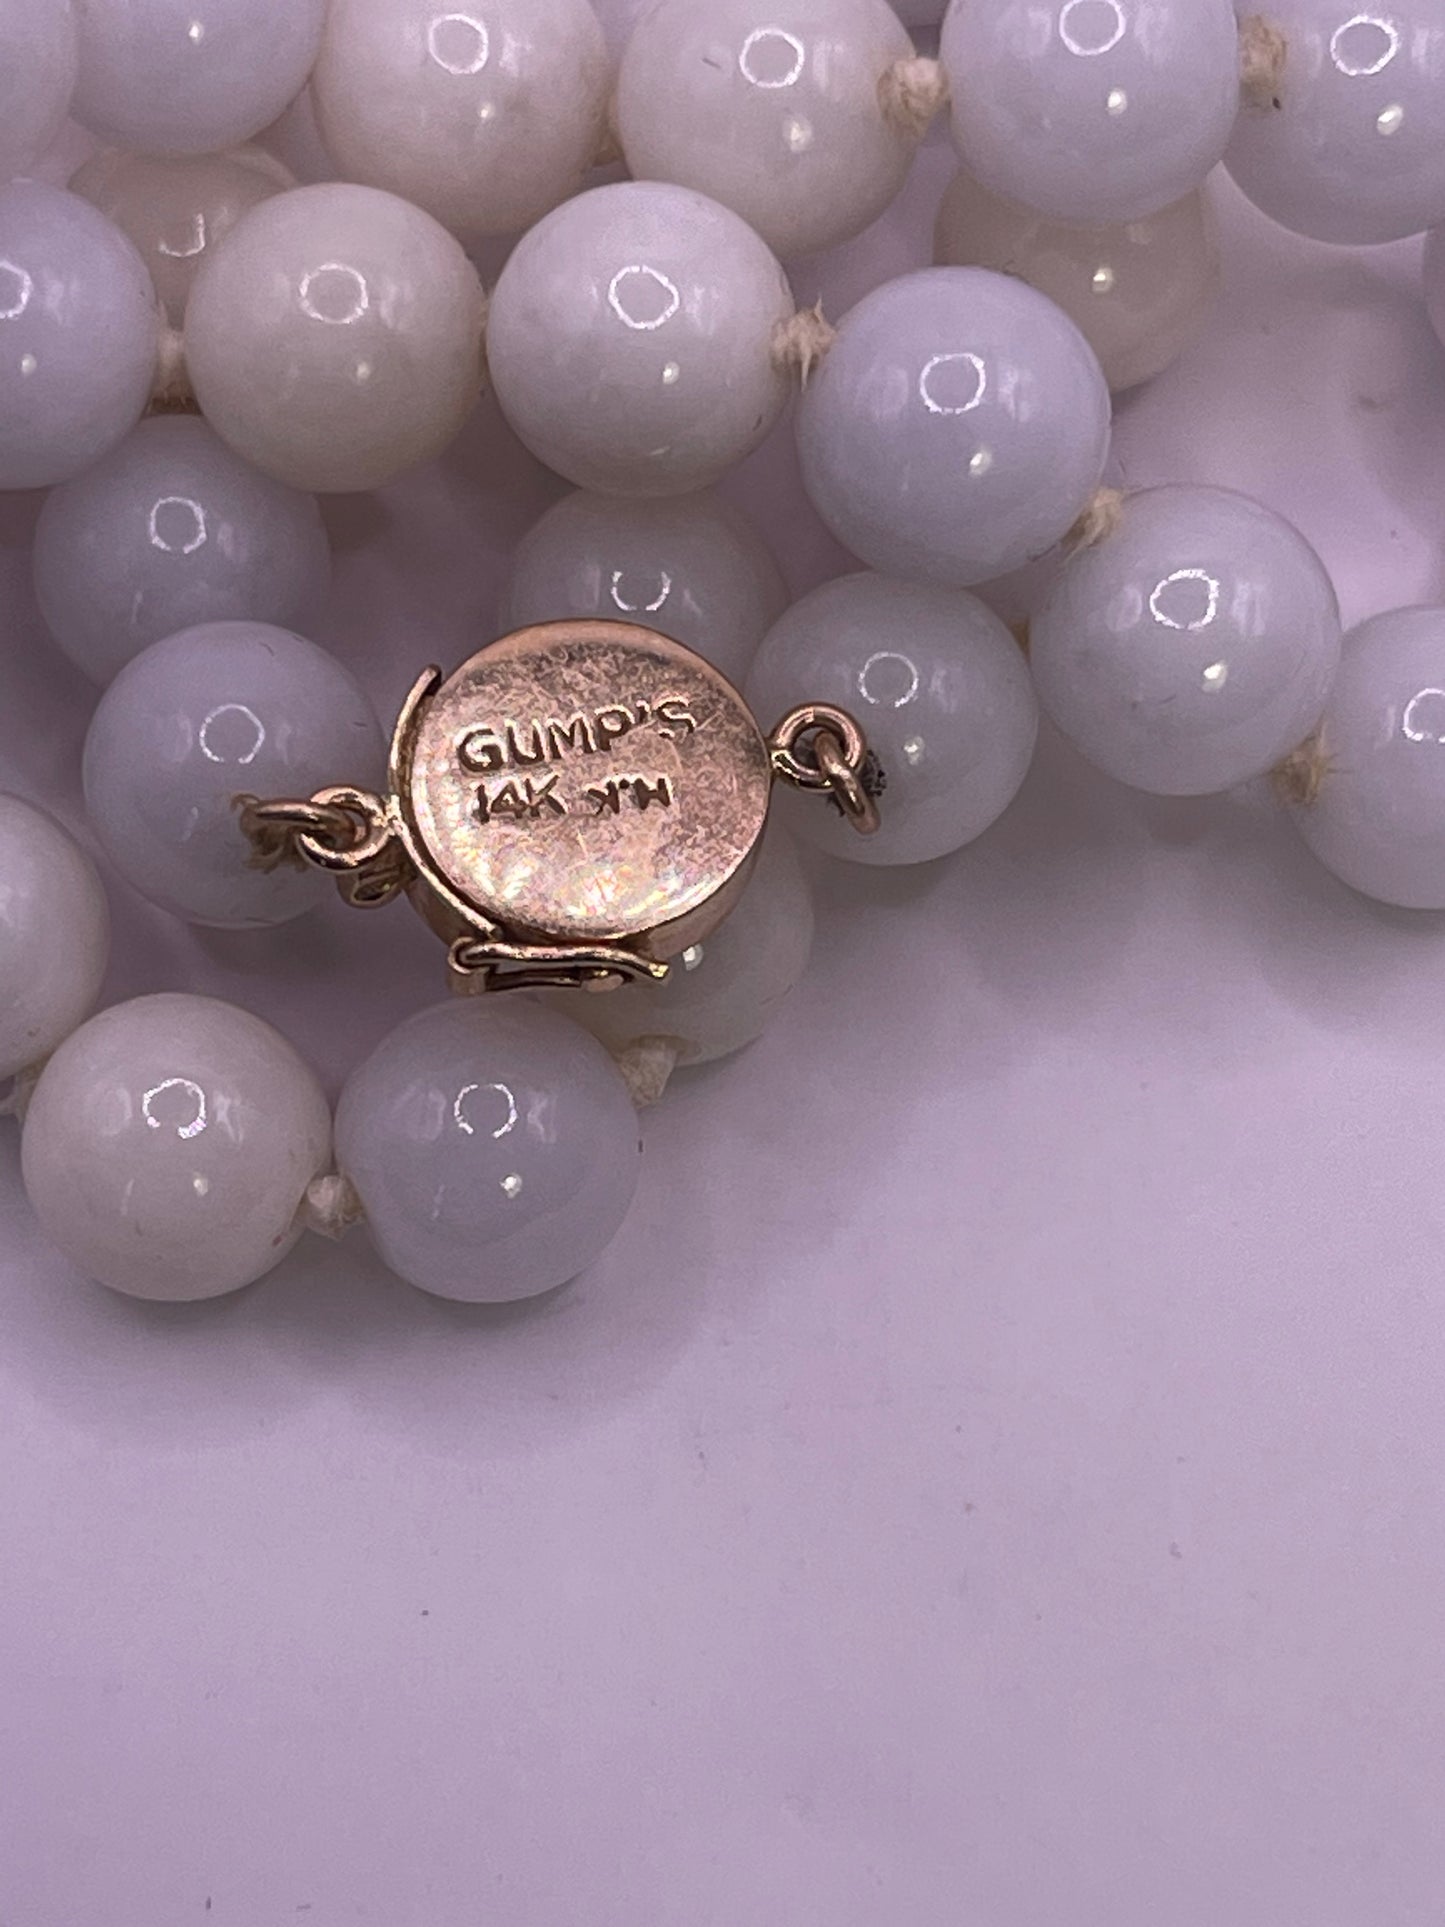 A vintage lavender jade necklace from Gumps